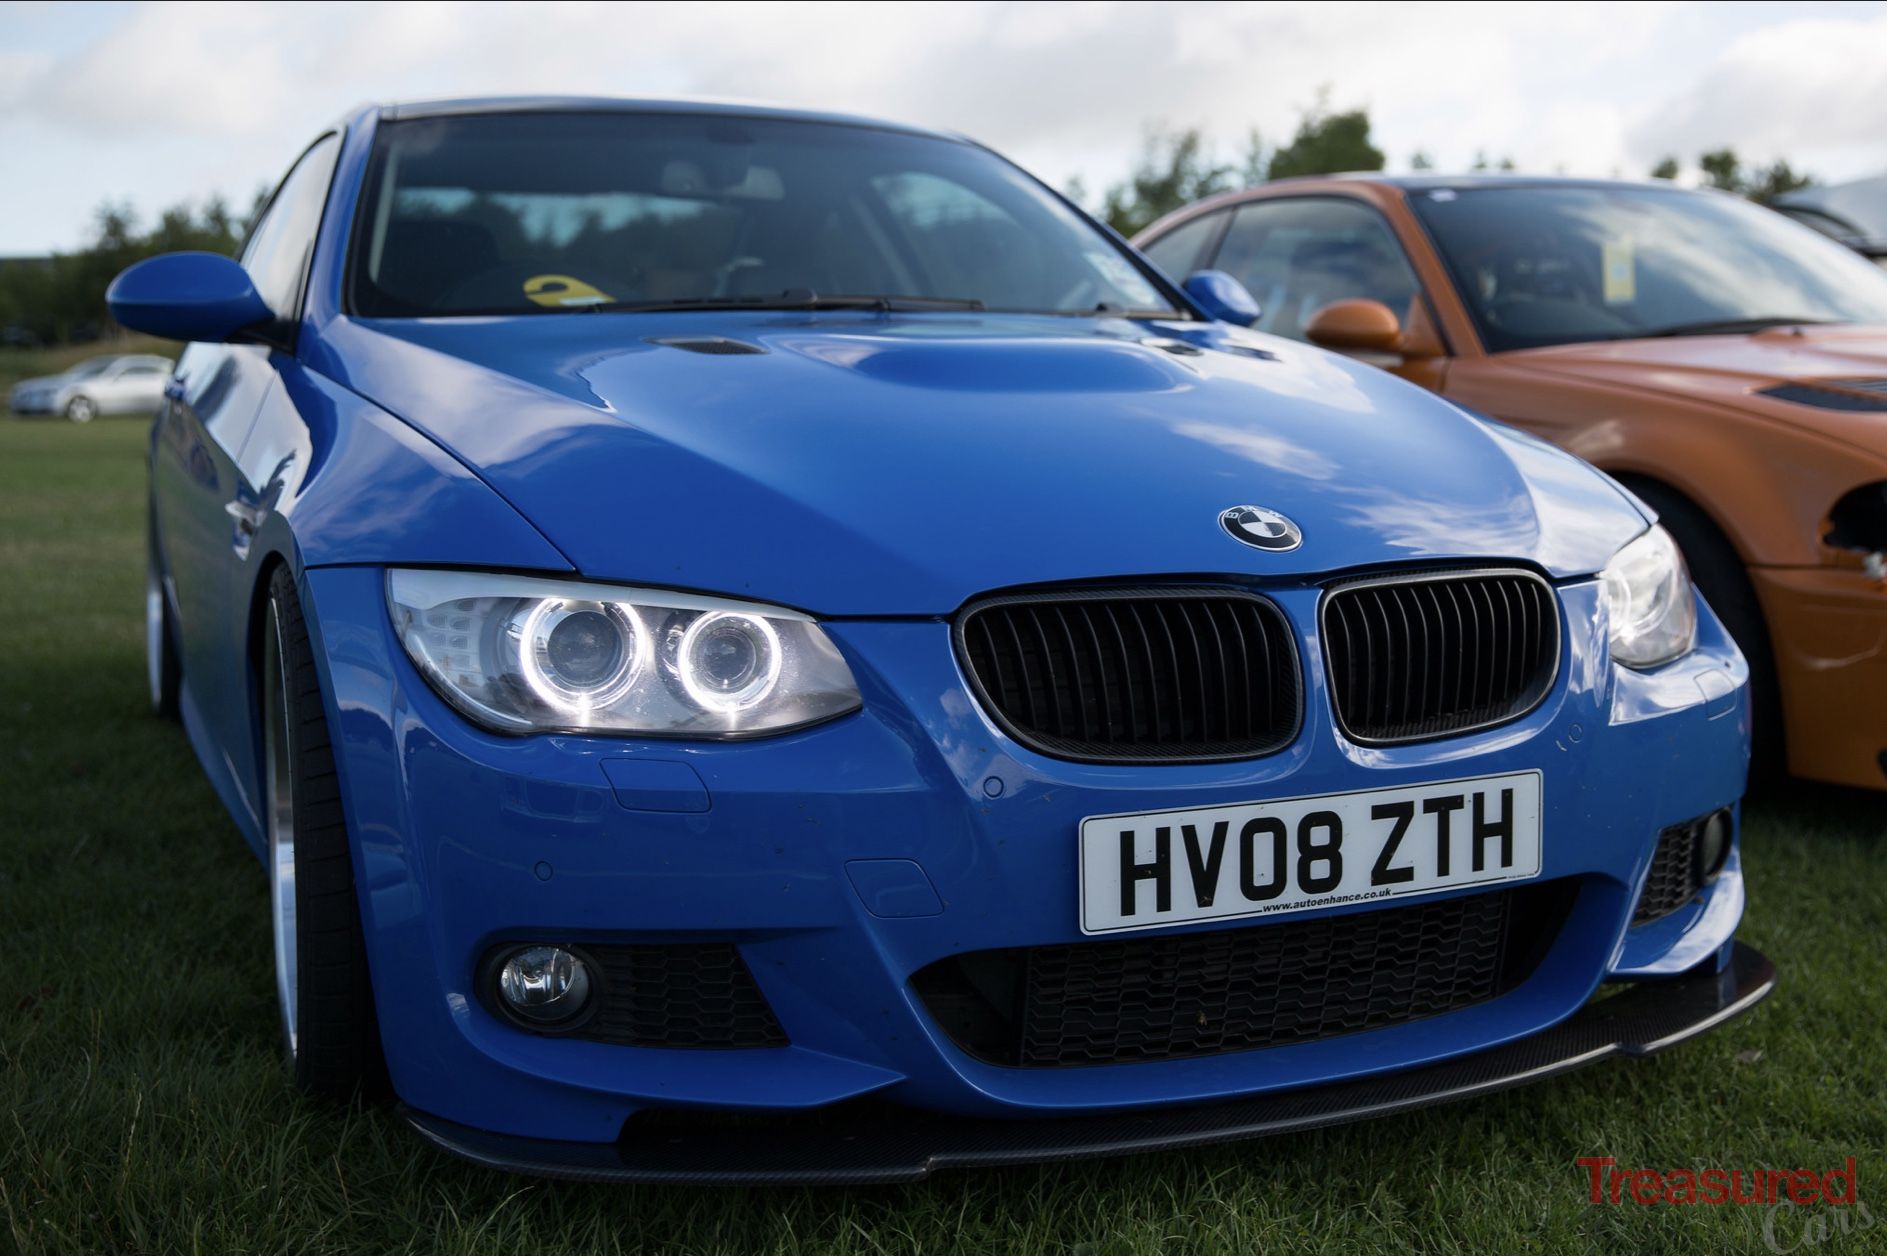 DT5_6233, BMW Car Club GB & Ireland